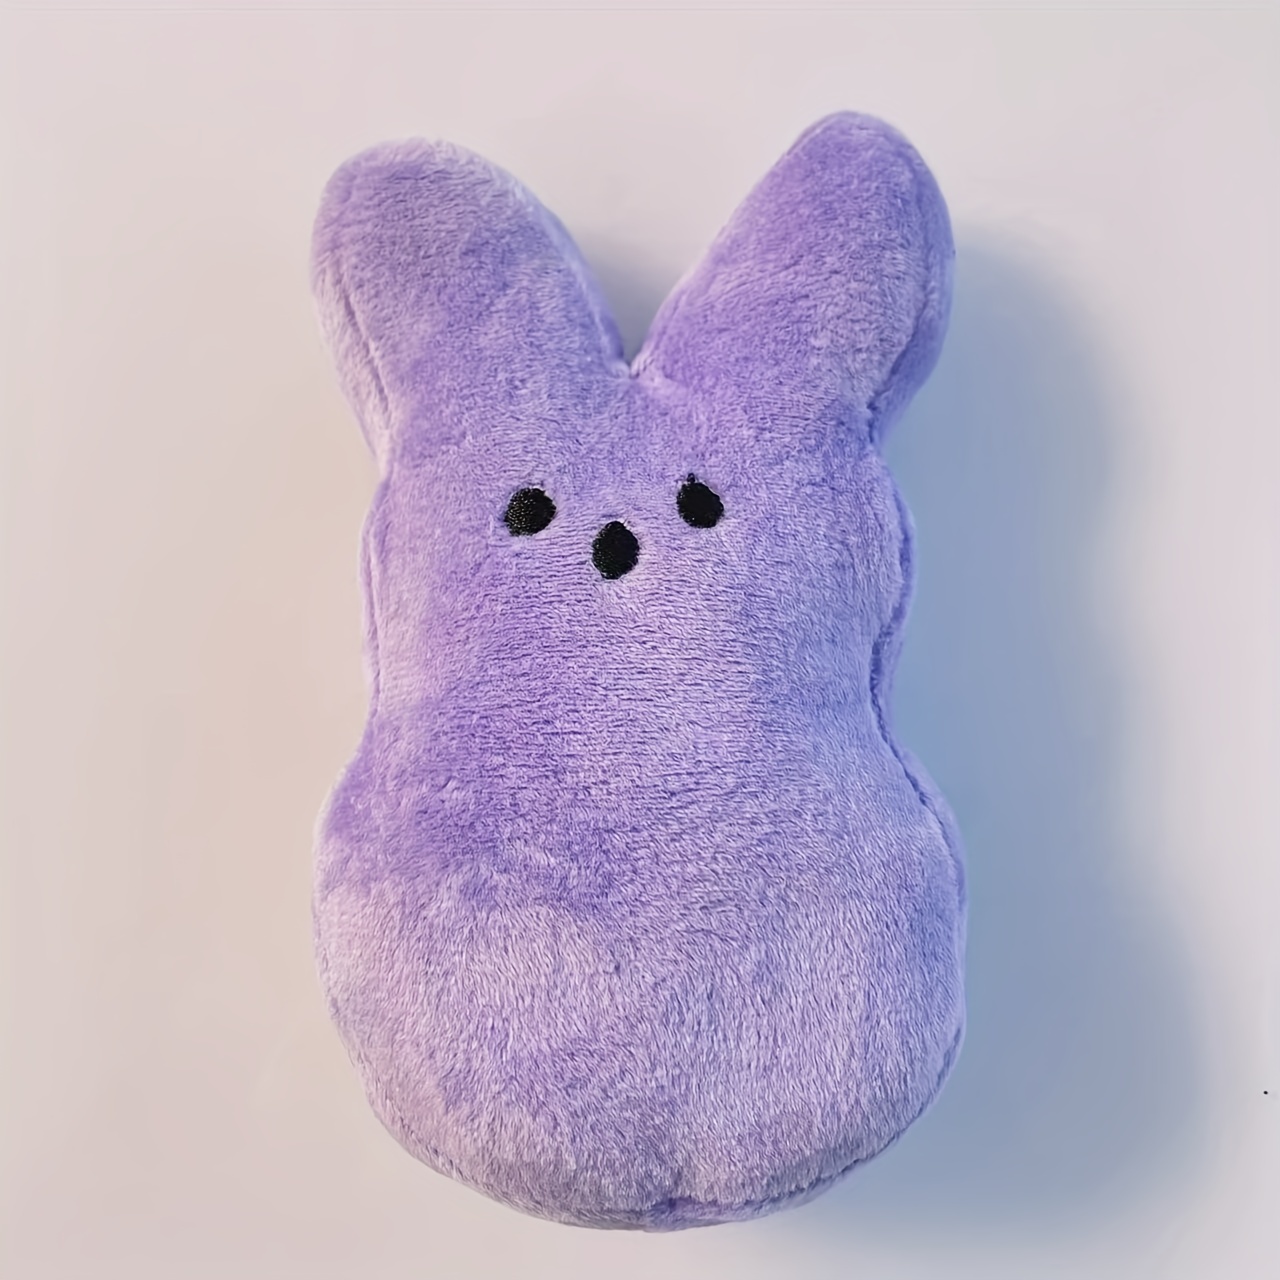 Peeps Plush Bunny Gift Set